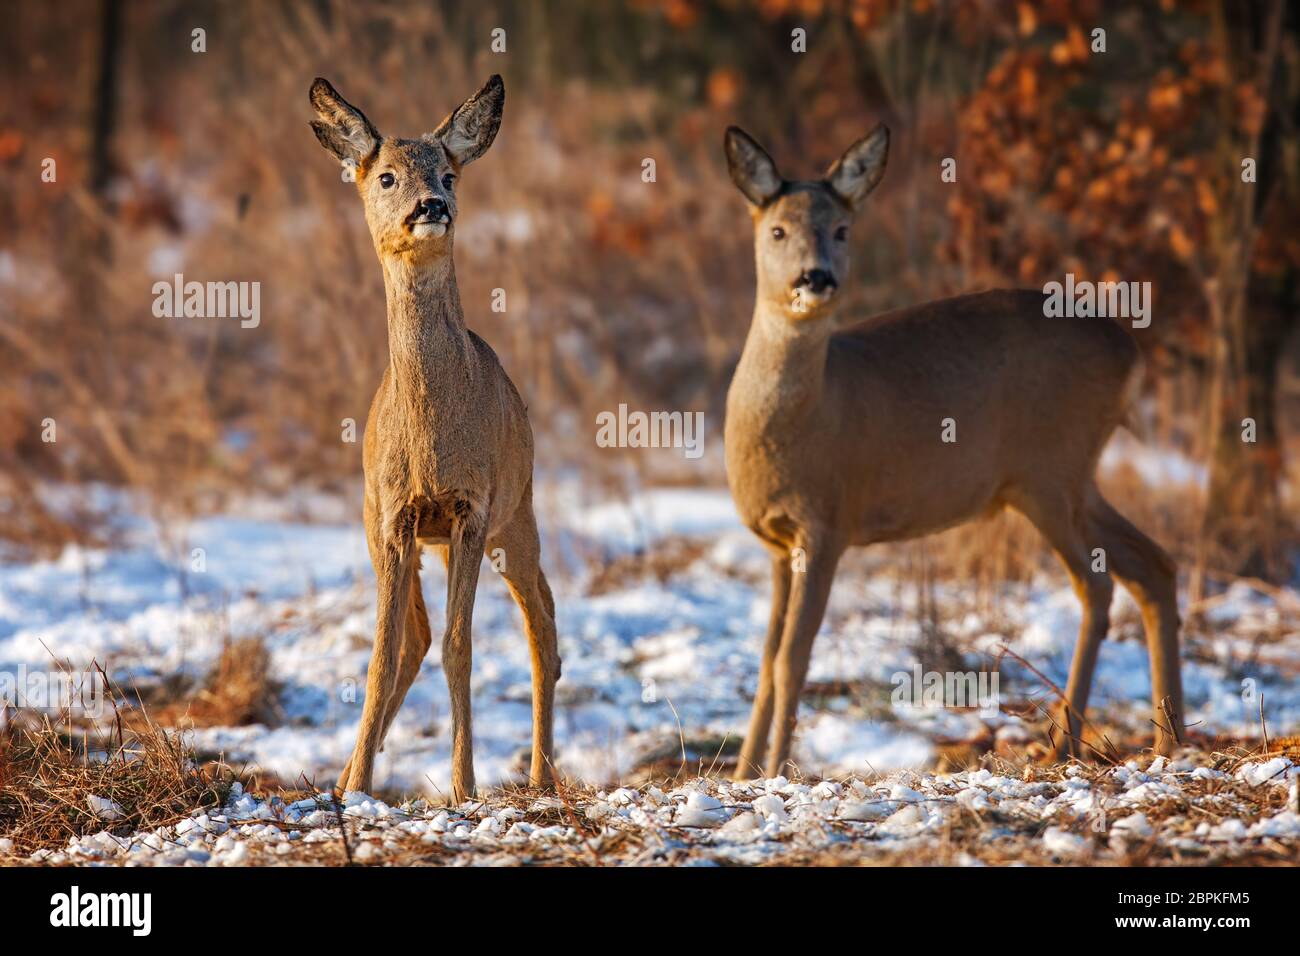 Deux cerfs-roc, caperolus caperolus, en hiver. Image naturelle de deux animaux sauvages qui regardent curieusement. Faune décor sorcière automne couleurs et neige Banque D'Images